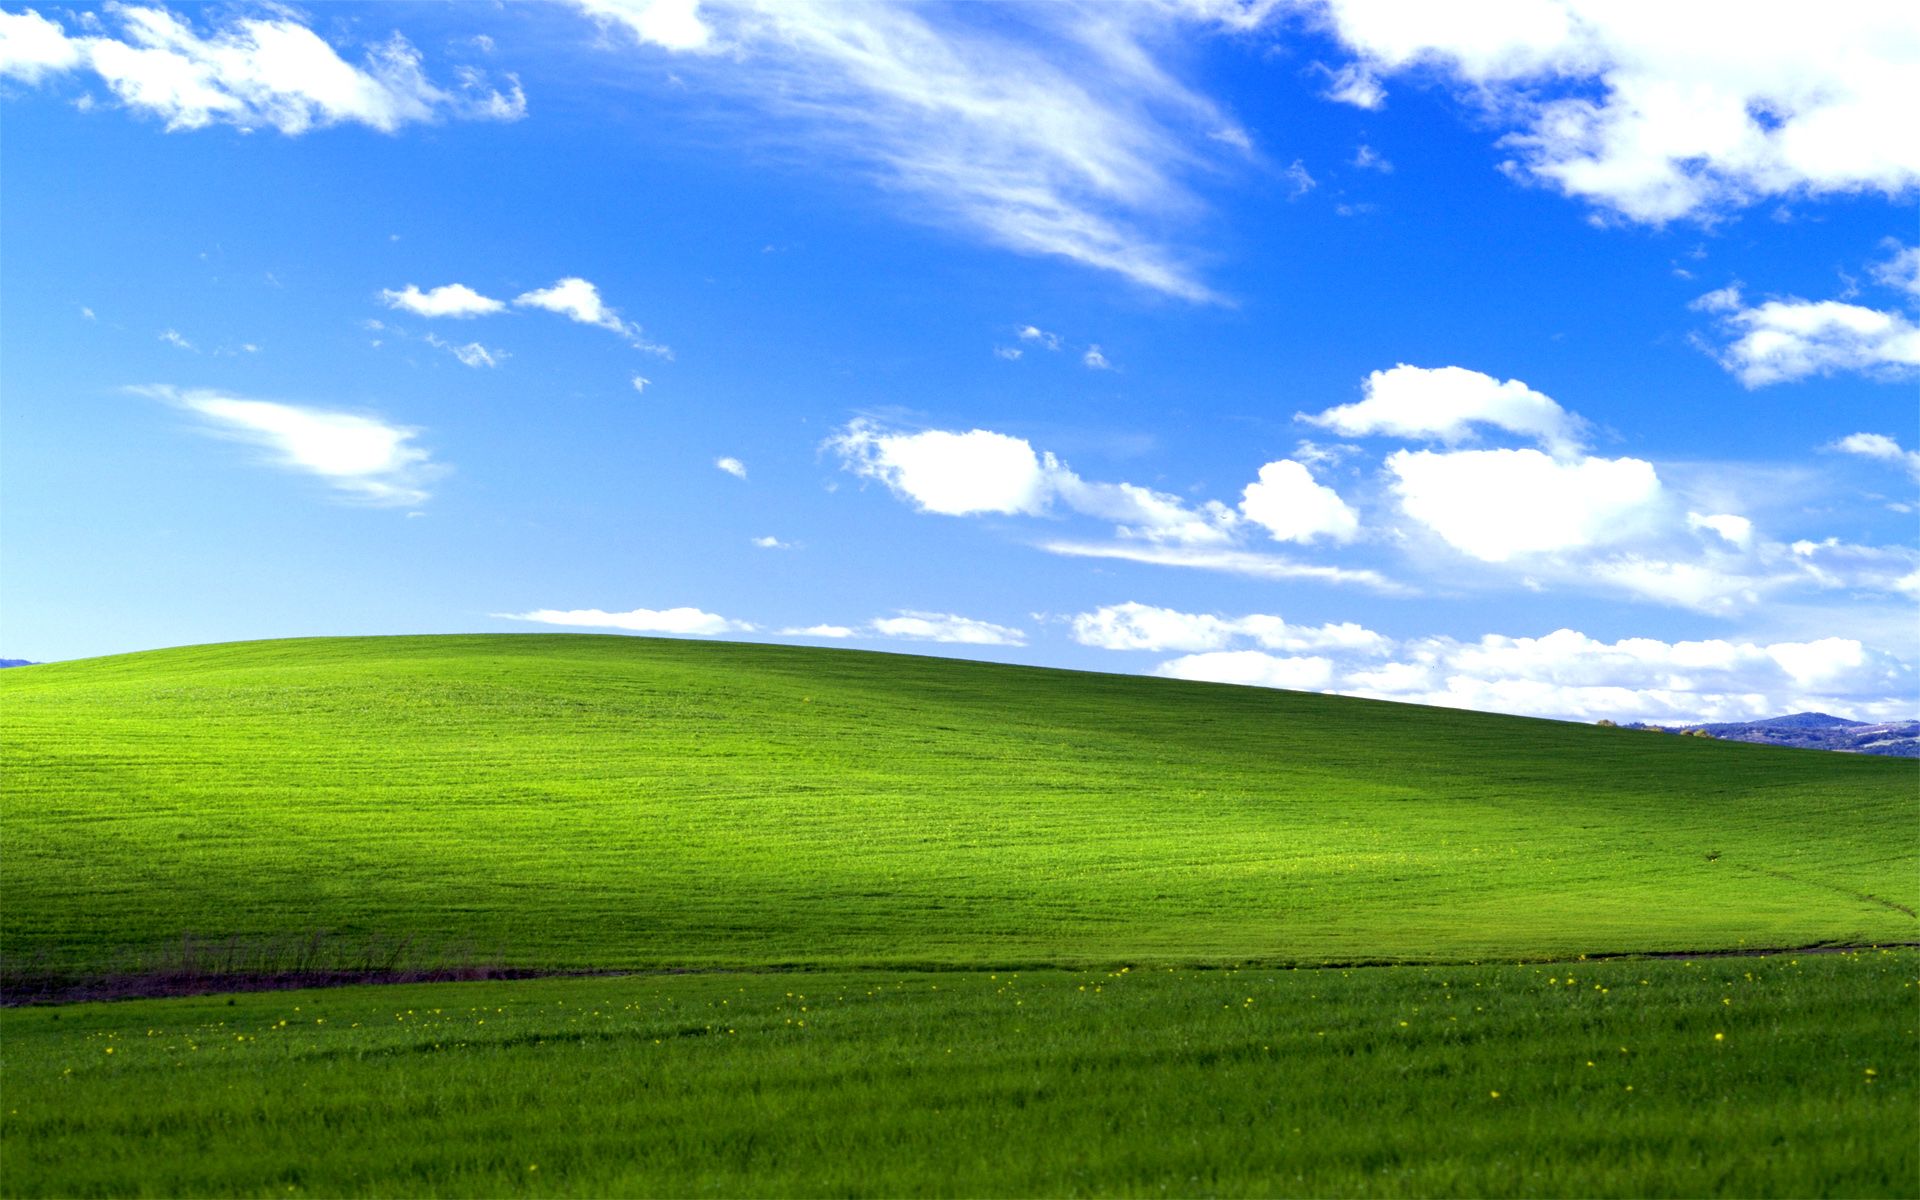 Bộ sưu tập hình nền Windows XP HD đầy màu sắc và sống động của WindowsAesthetics trên DeviantArt chắc chắn sẽ đem lại cho bạn niềm vui và sự hứng thú khi sử dụng máy tính. Những bức ảnh này sẽ làm cho màn hình của bạn thêm phần đẹp mắt và tươi sáng. Bắt đầu để xem bộ sưu tập này và chọn cho mình từng tấm hình để làm hình nền cho máy tính của bạn.